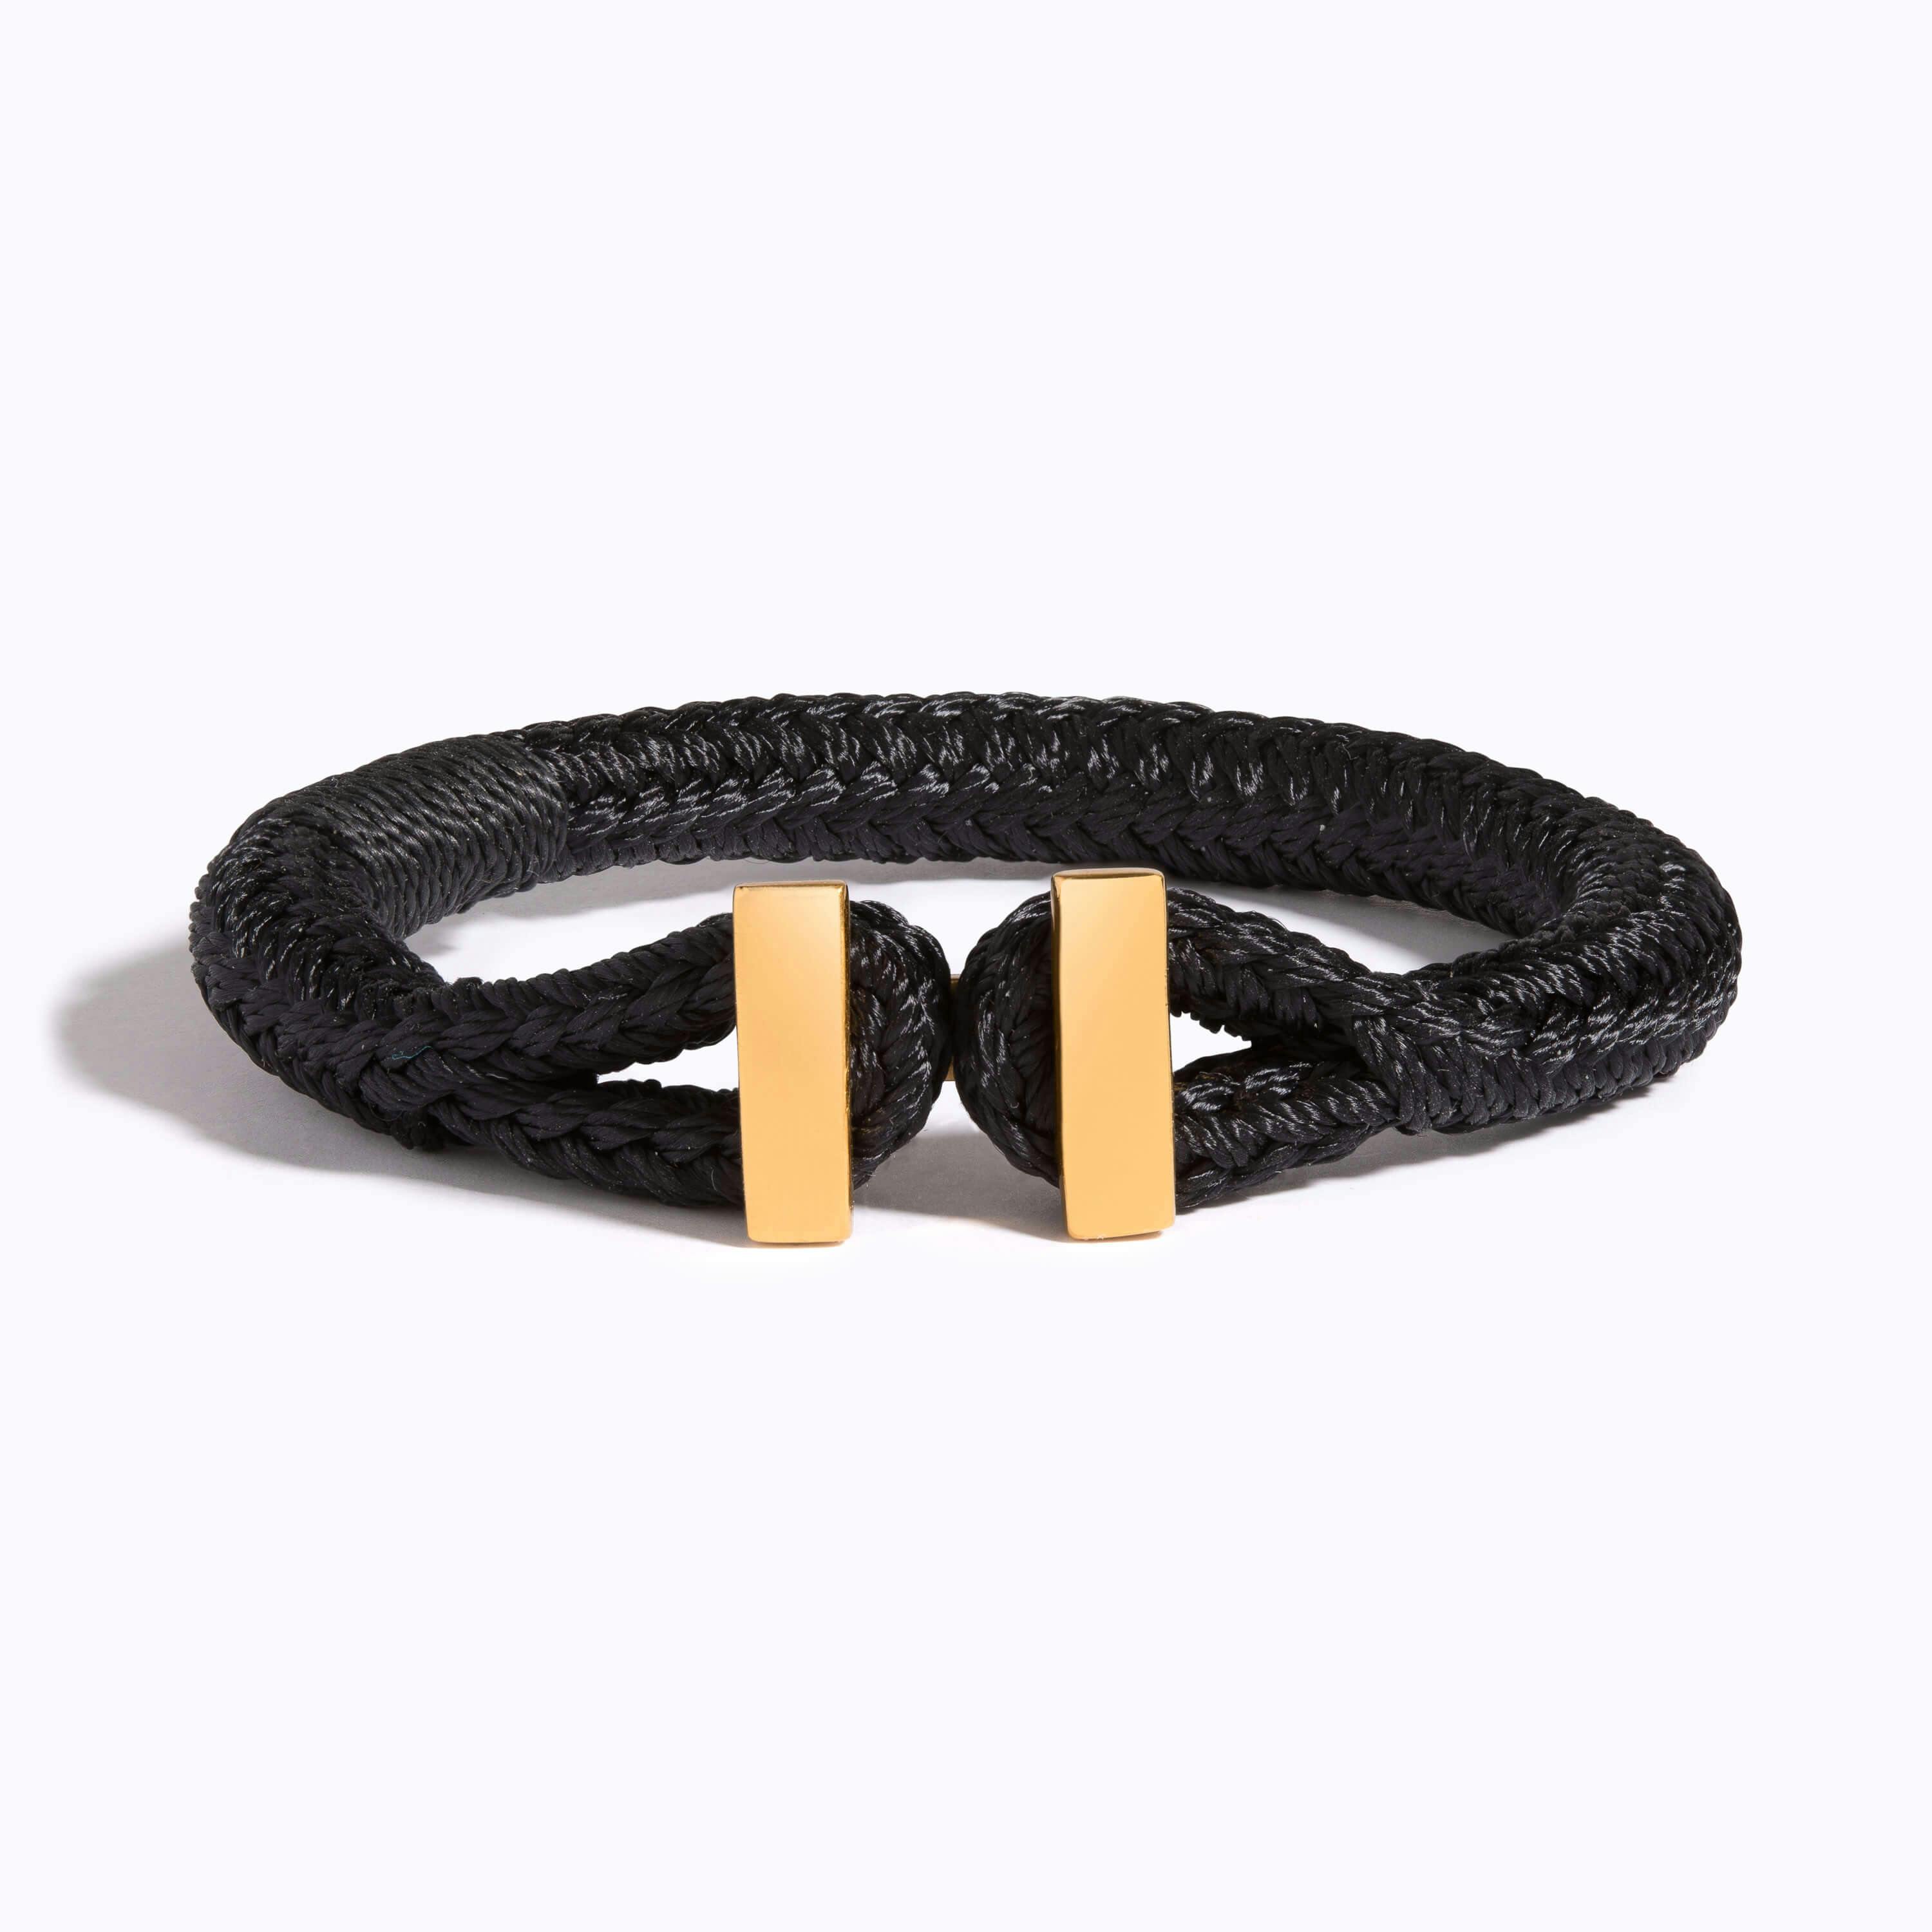 Bar Woven Bracelet on black nylon rope